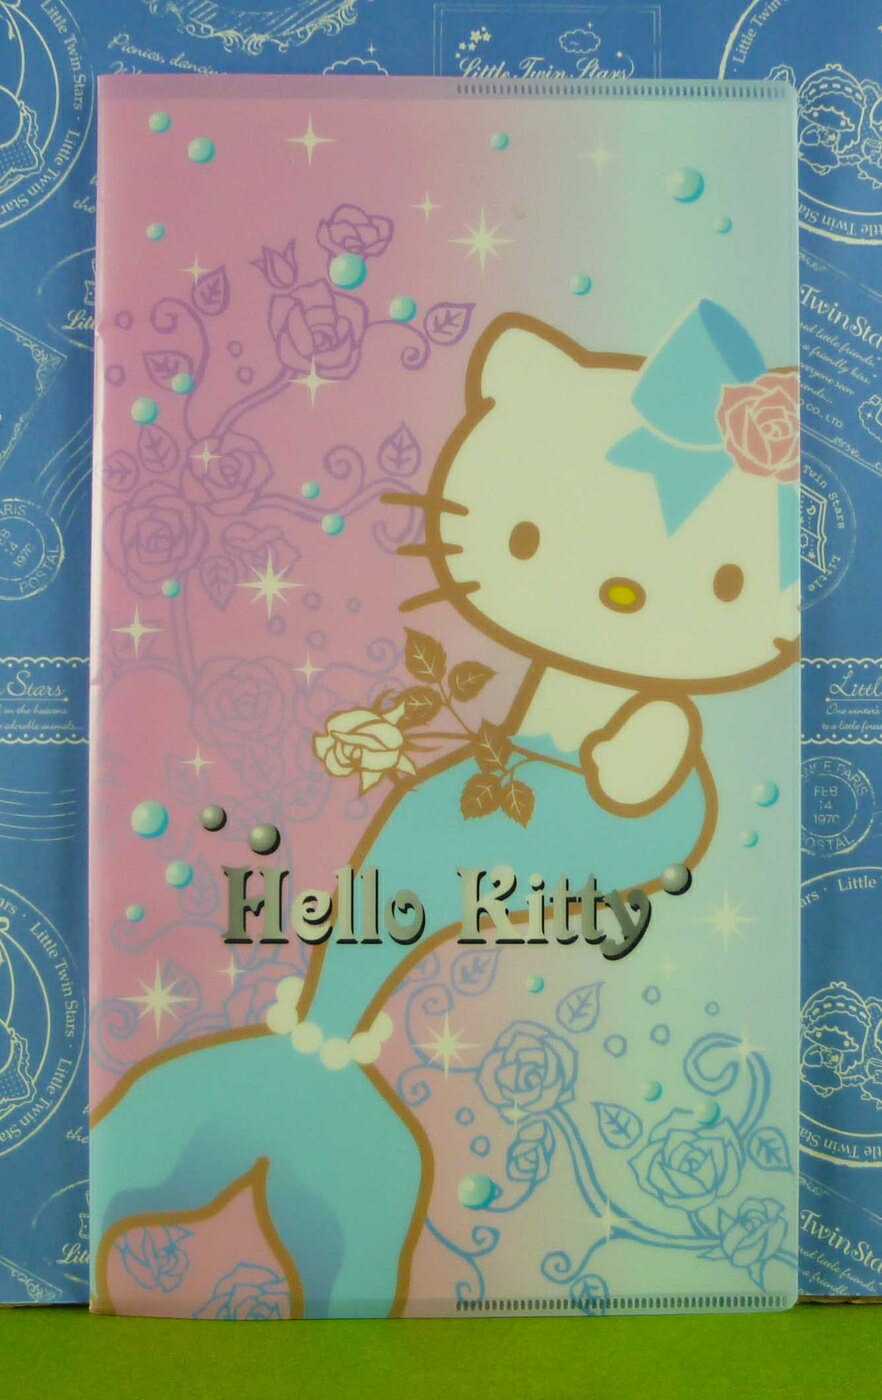 【震撼精品百貨】Hello Kitty 凱蒂貓 傳真memo 美人魚【共1款】 震撼日式精品百貨